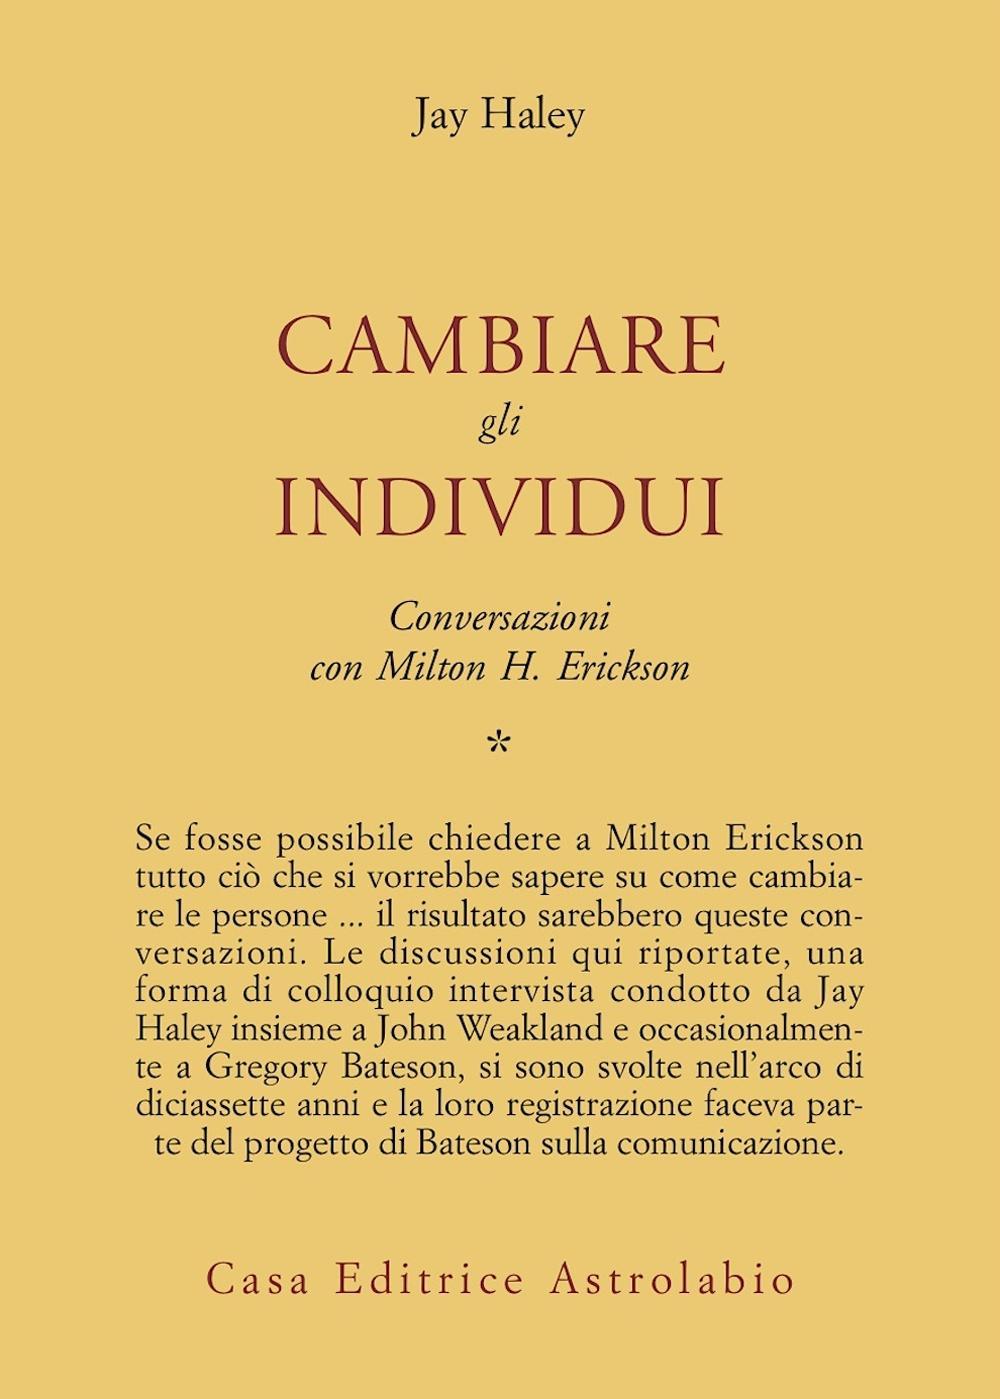 Conversazioni con Milton Erickson. Vol. 1: Cambiare gli individui